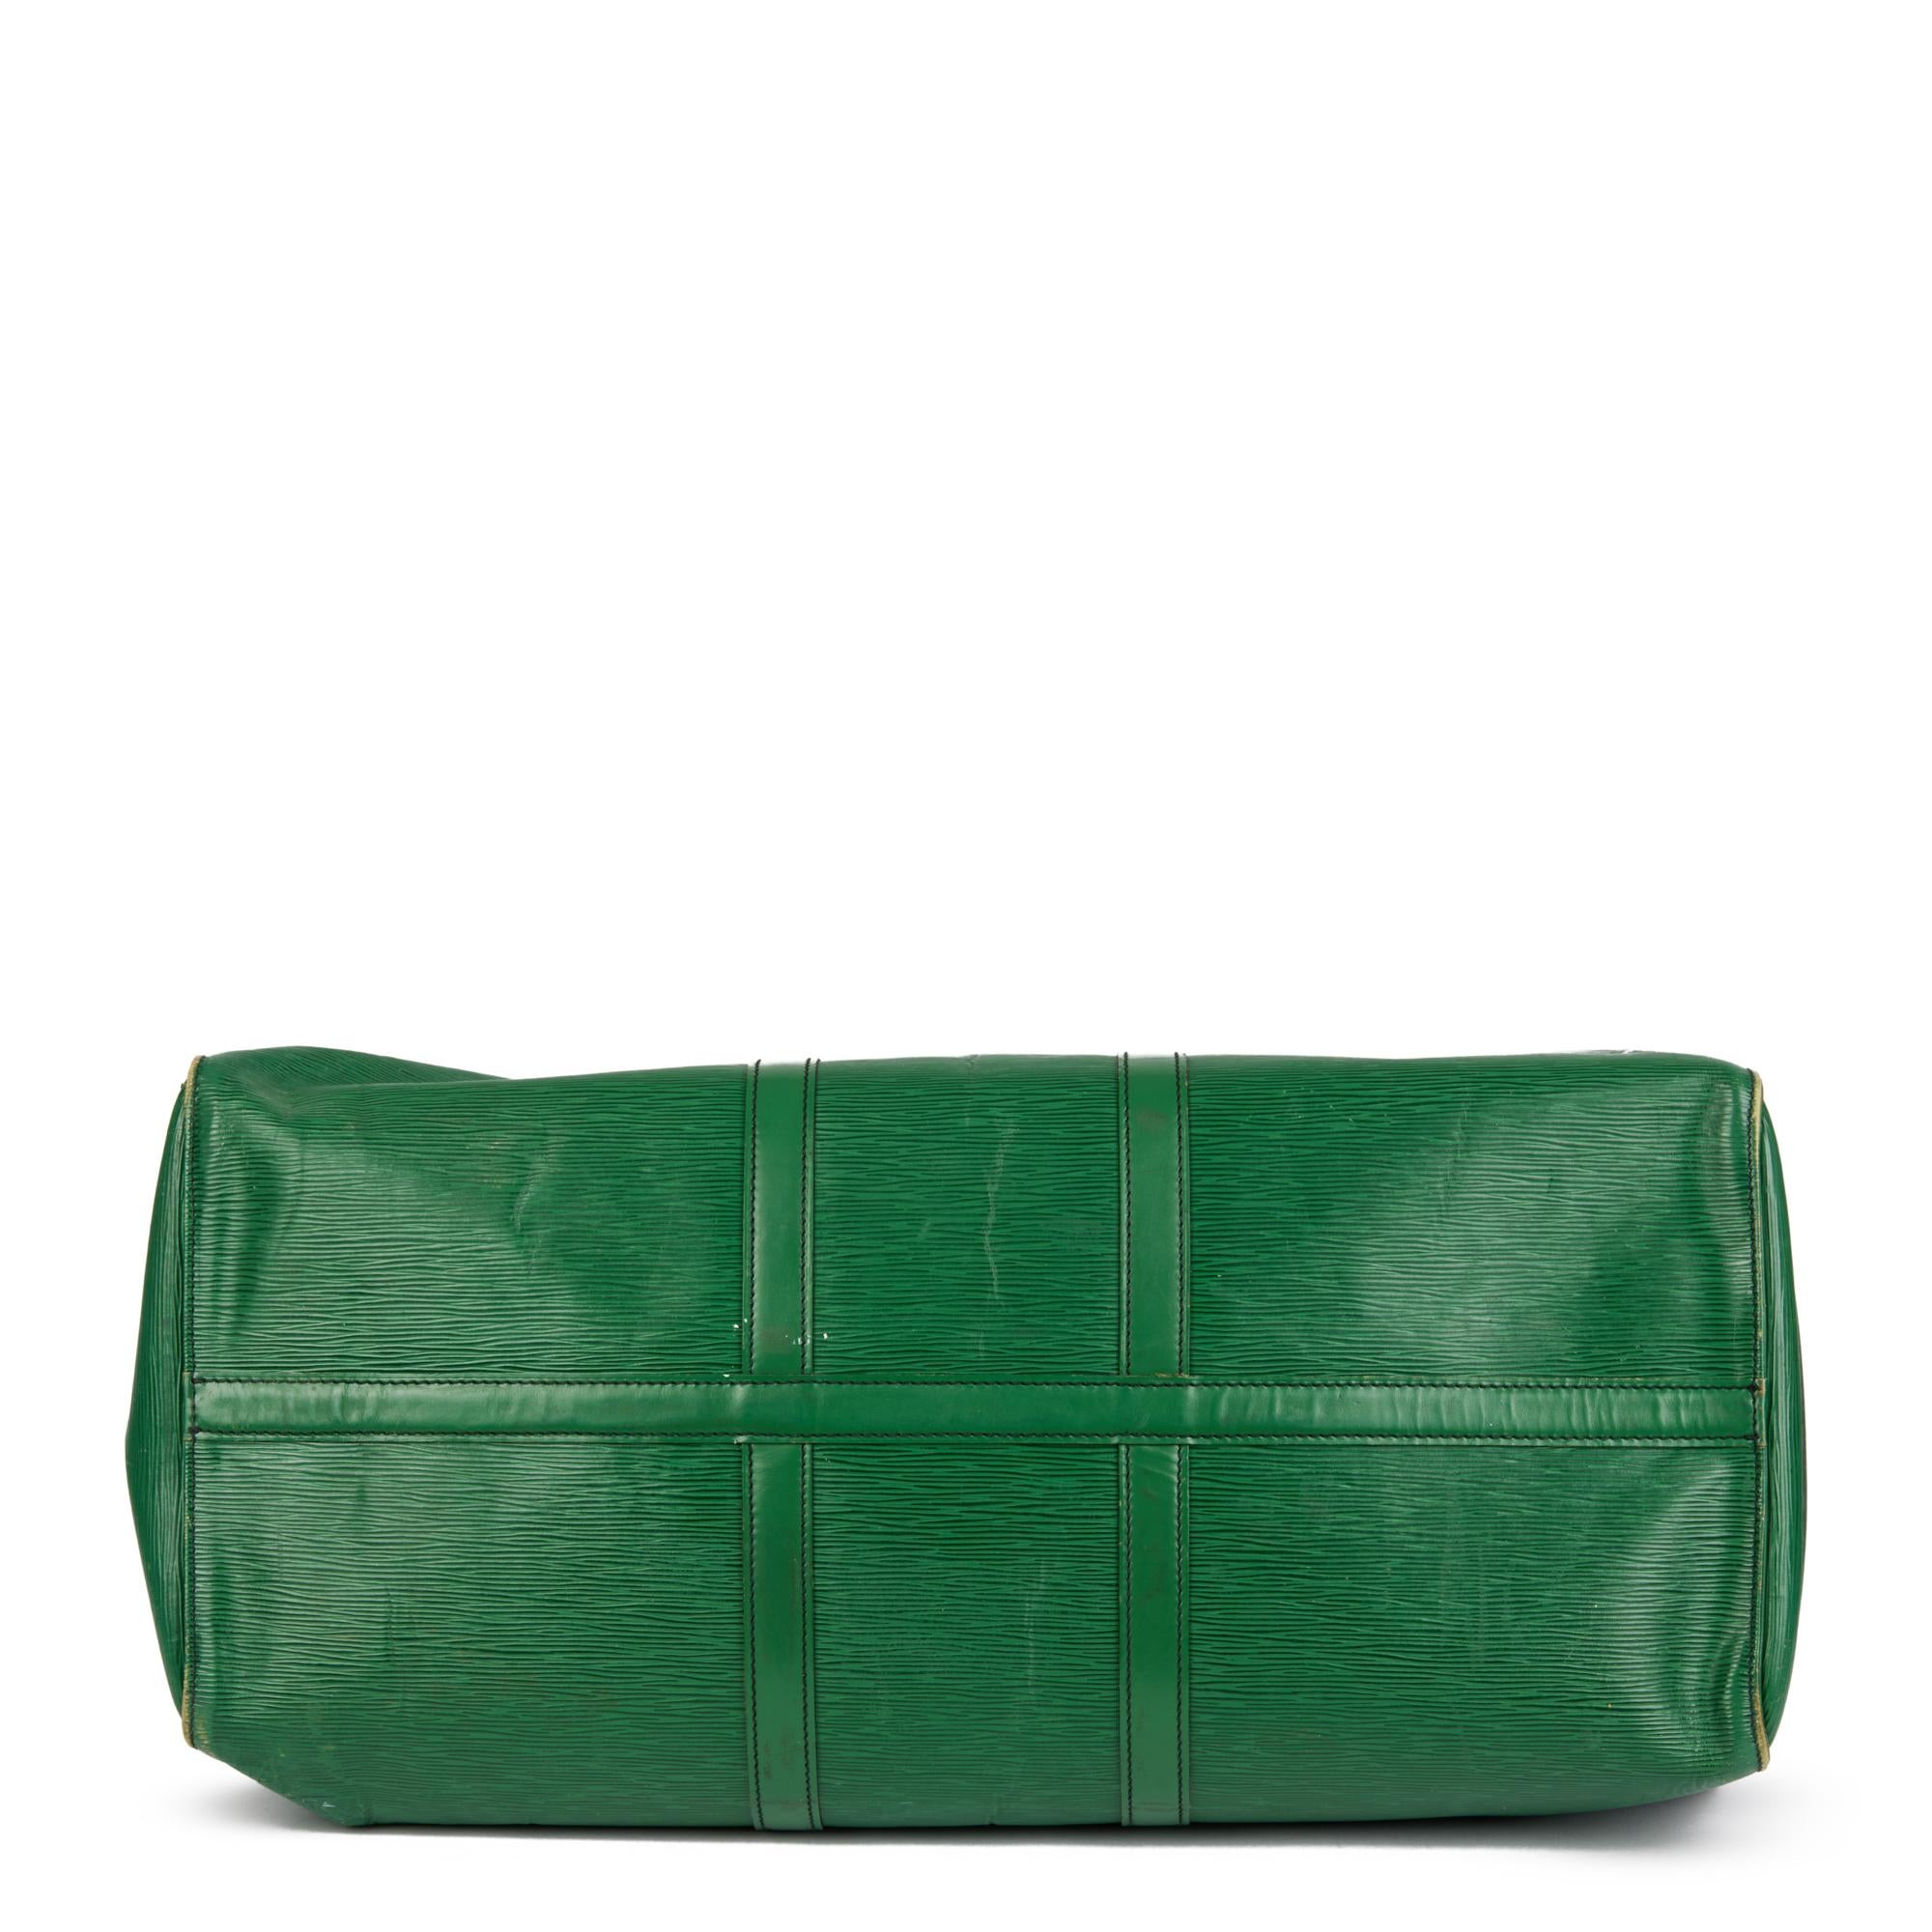 LOUIS VUITTON Green Epi Leather Vintage Keepall 55 1